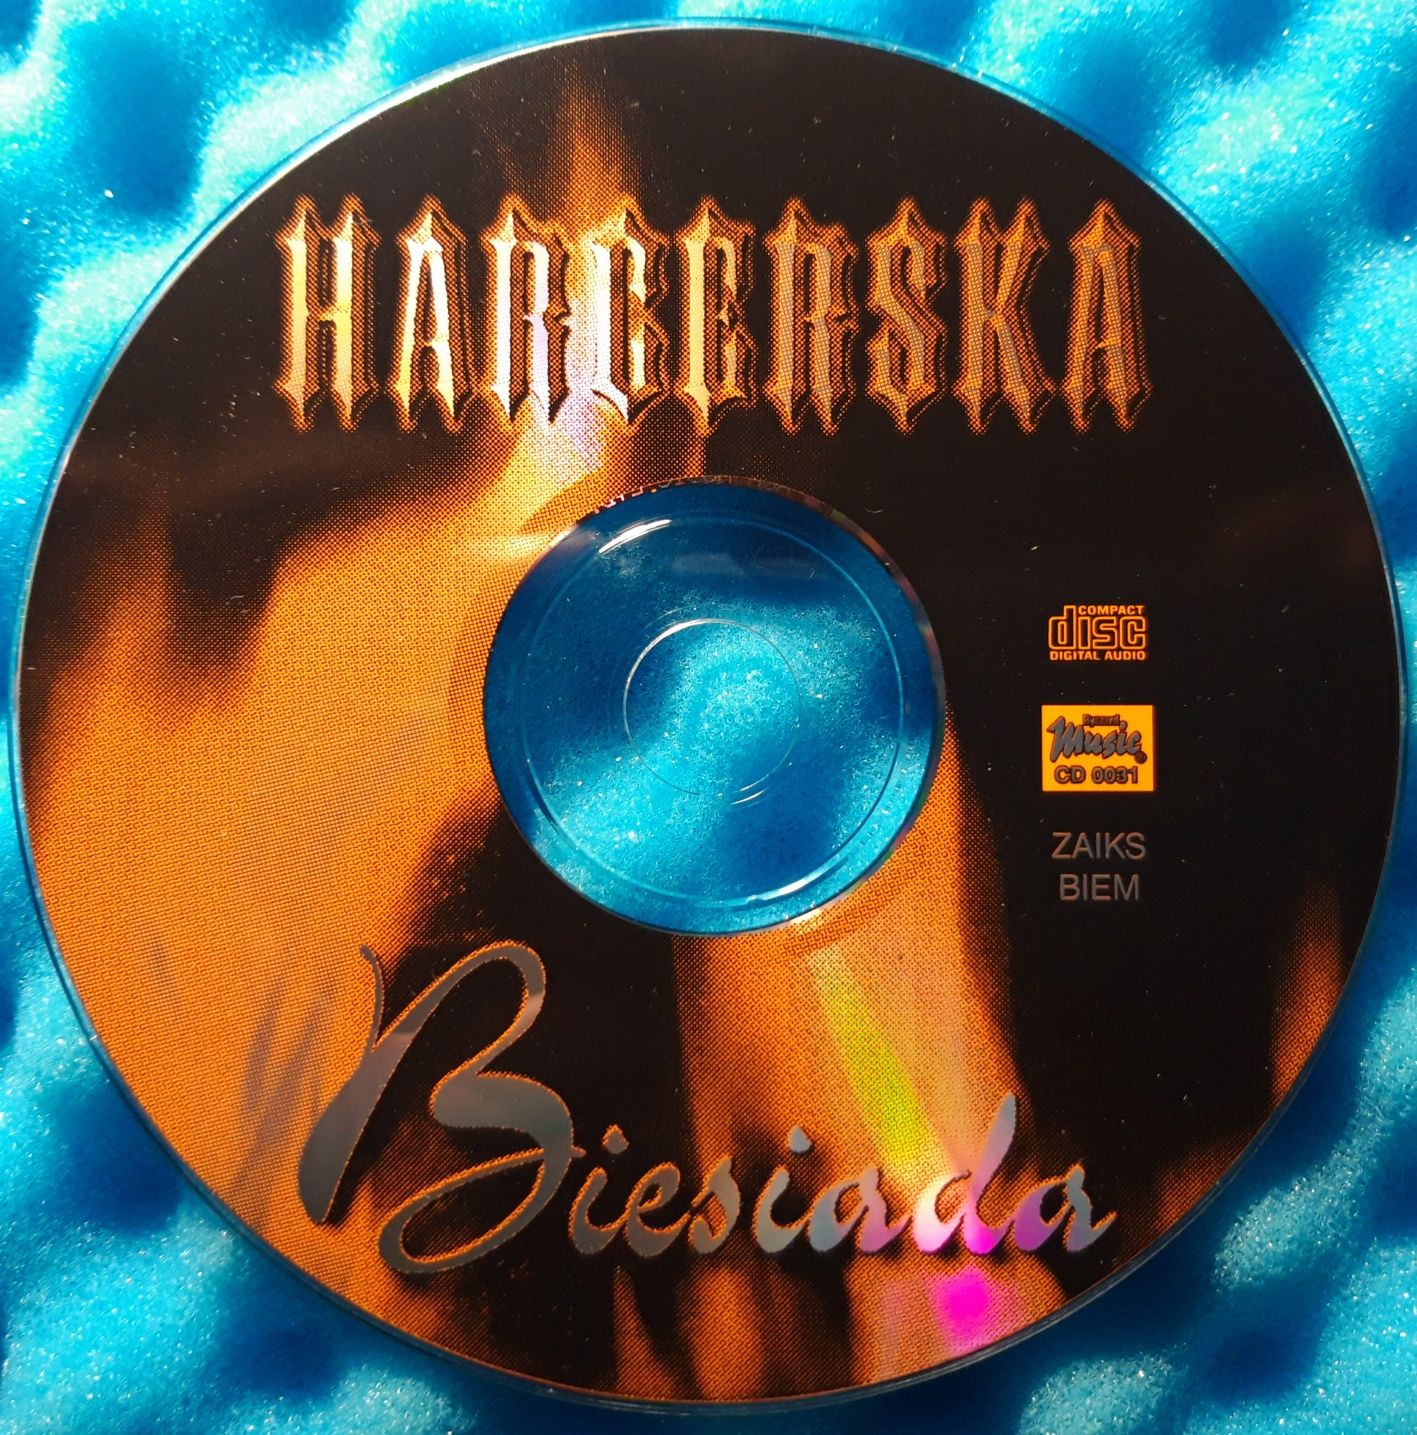 Harcerska Biesiada (CD, 1999)